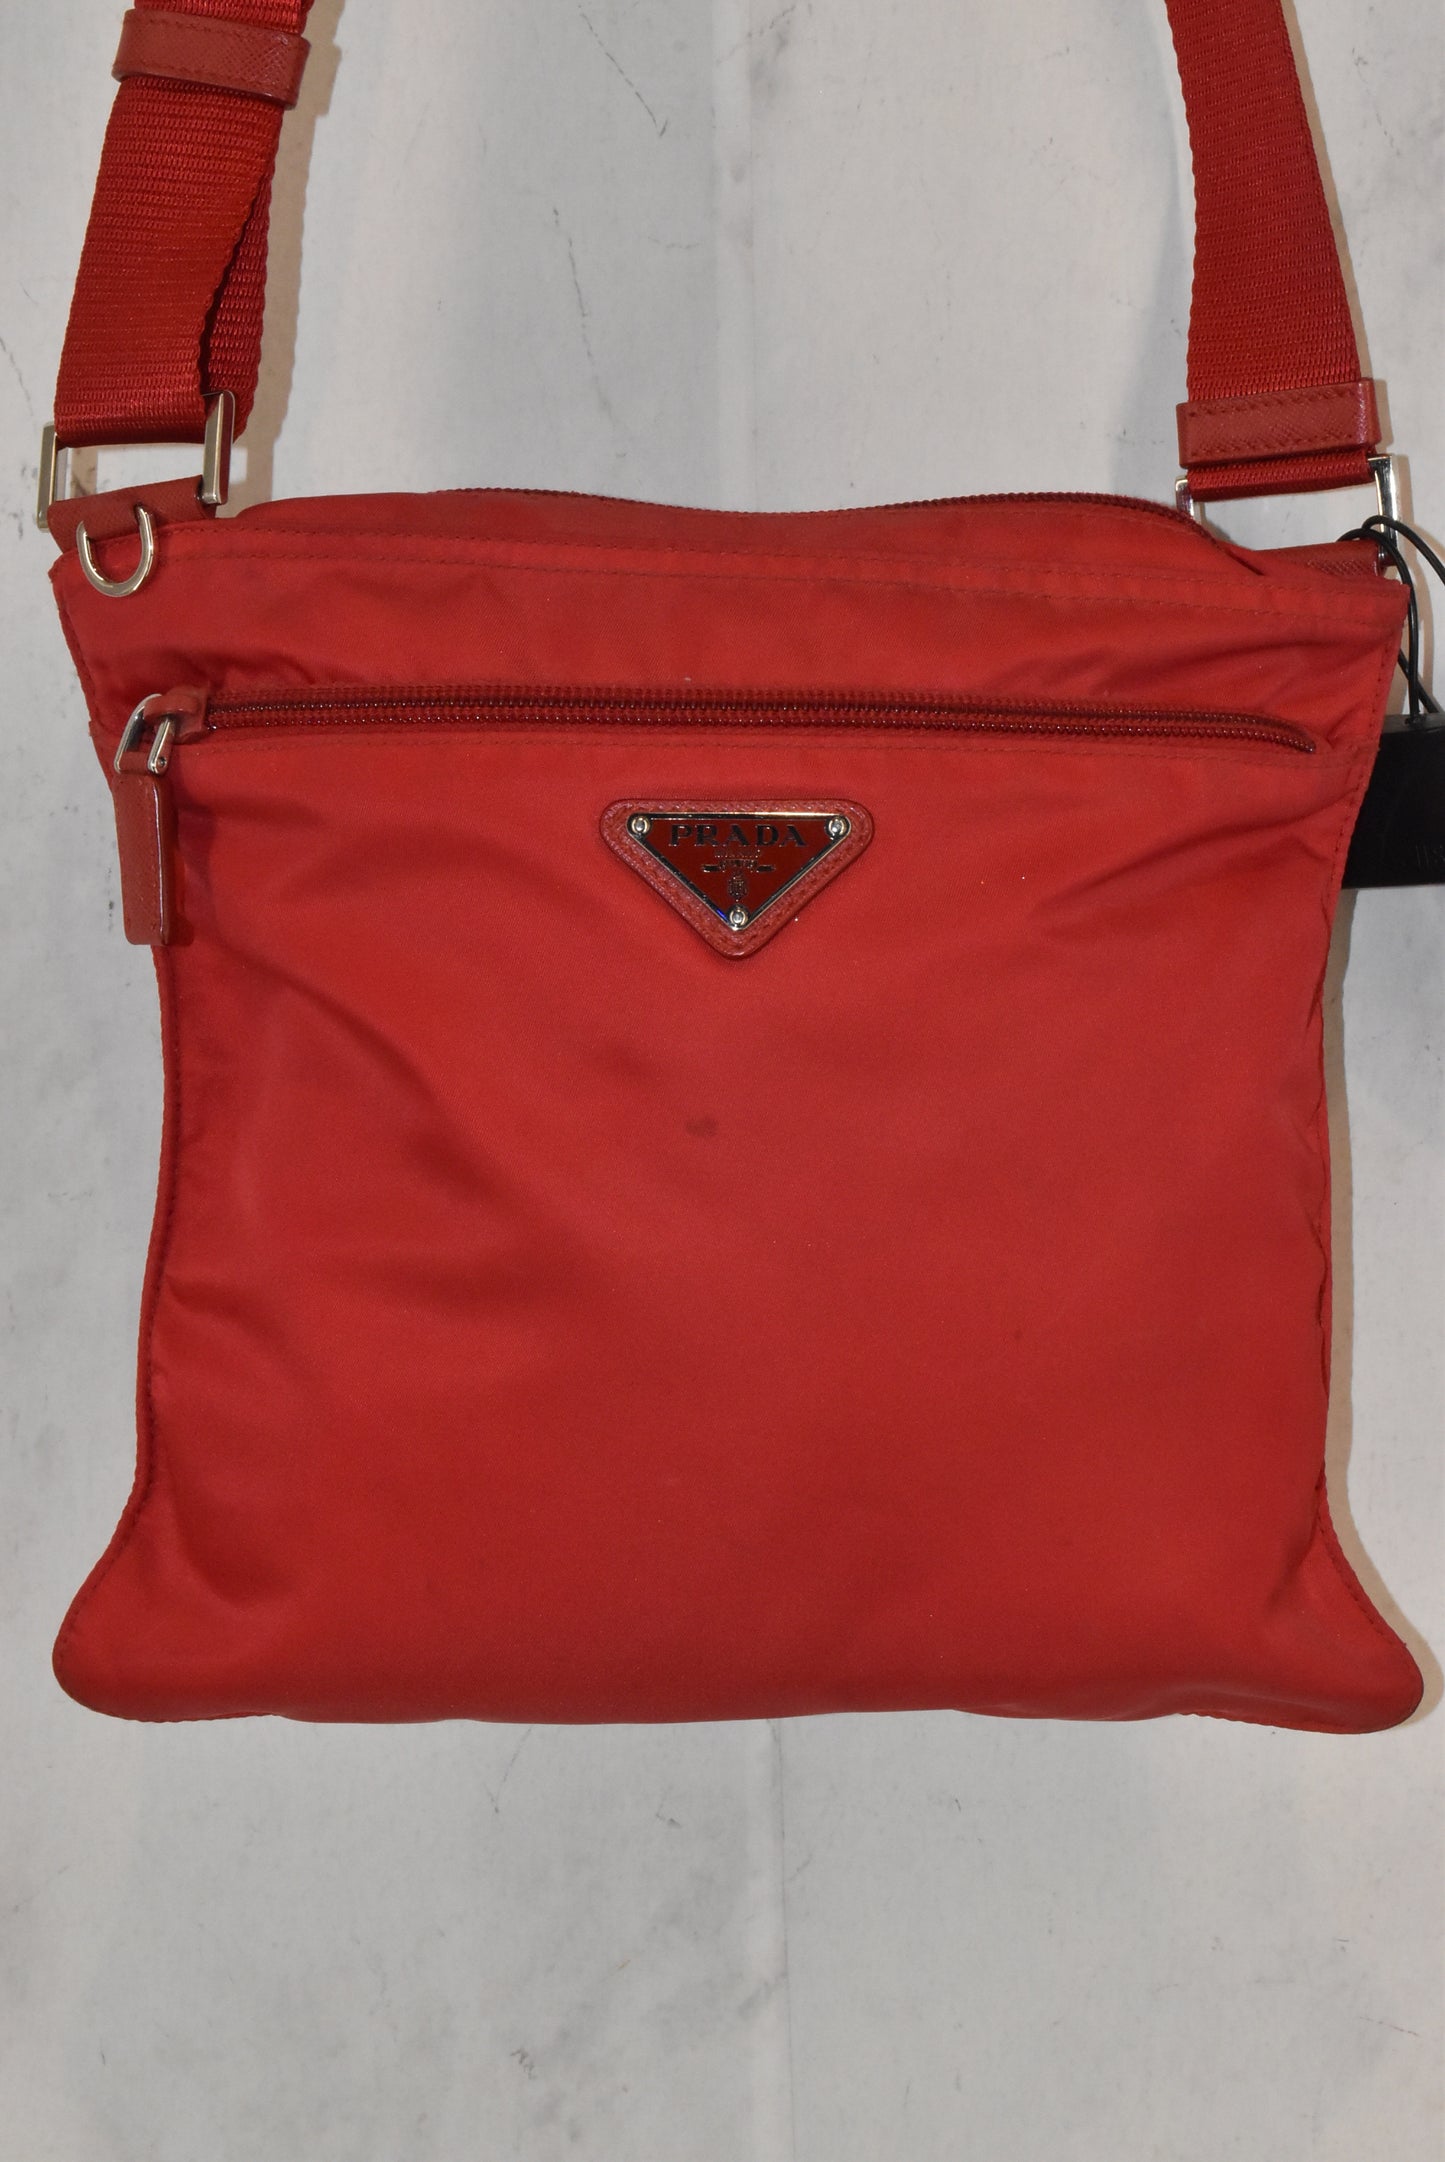 Handbag Designer By Prada  Size: Small